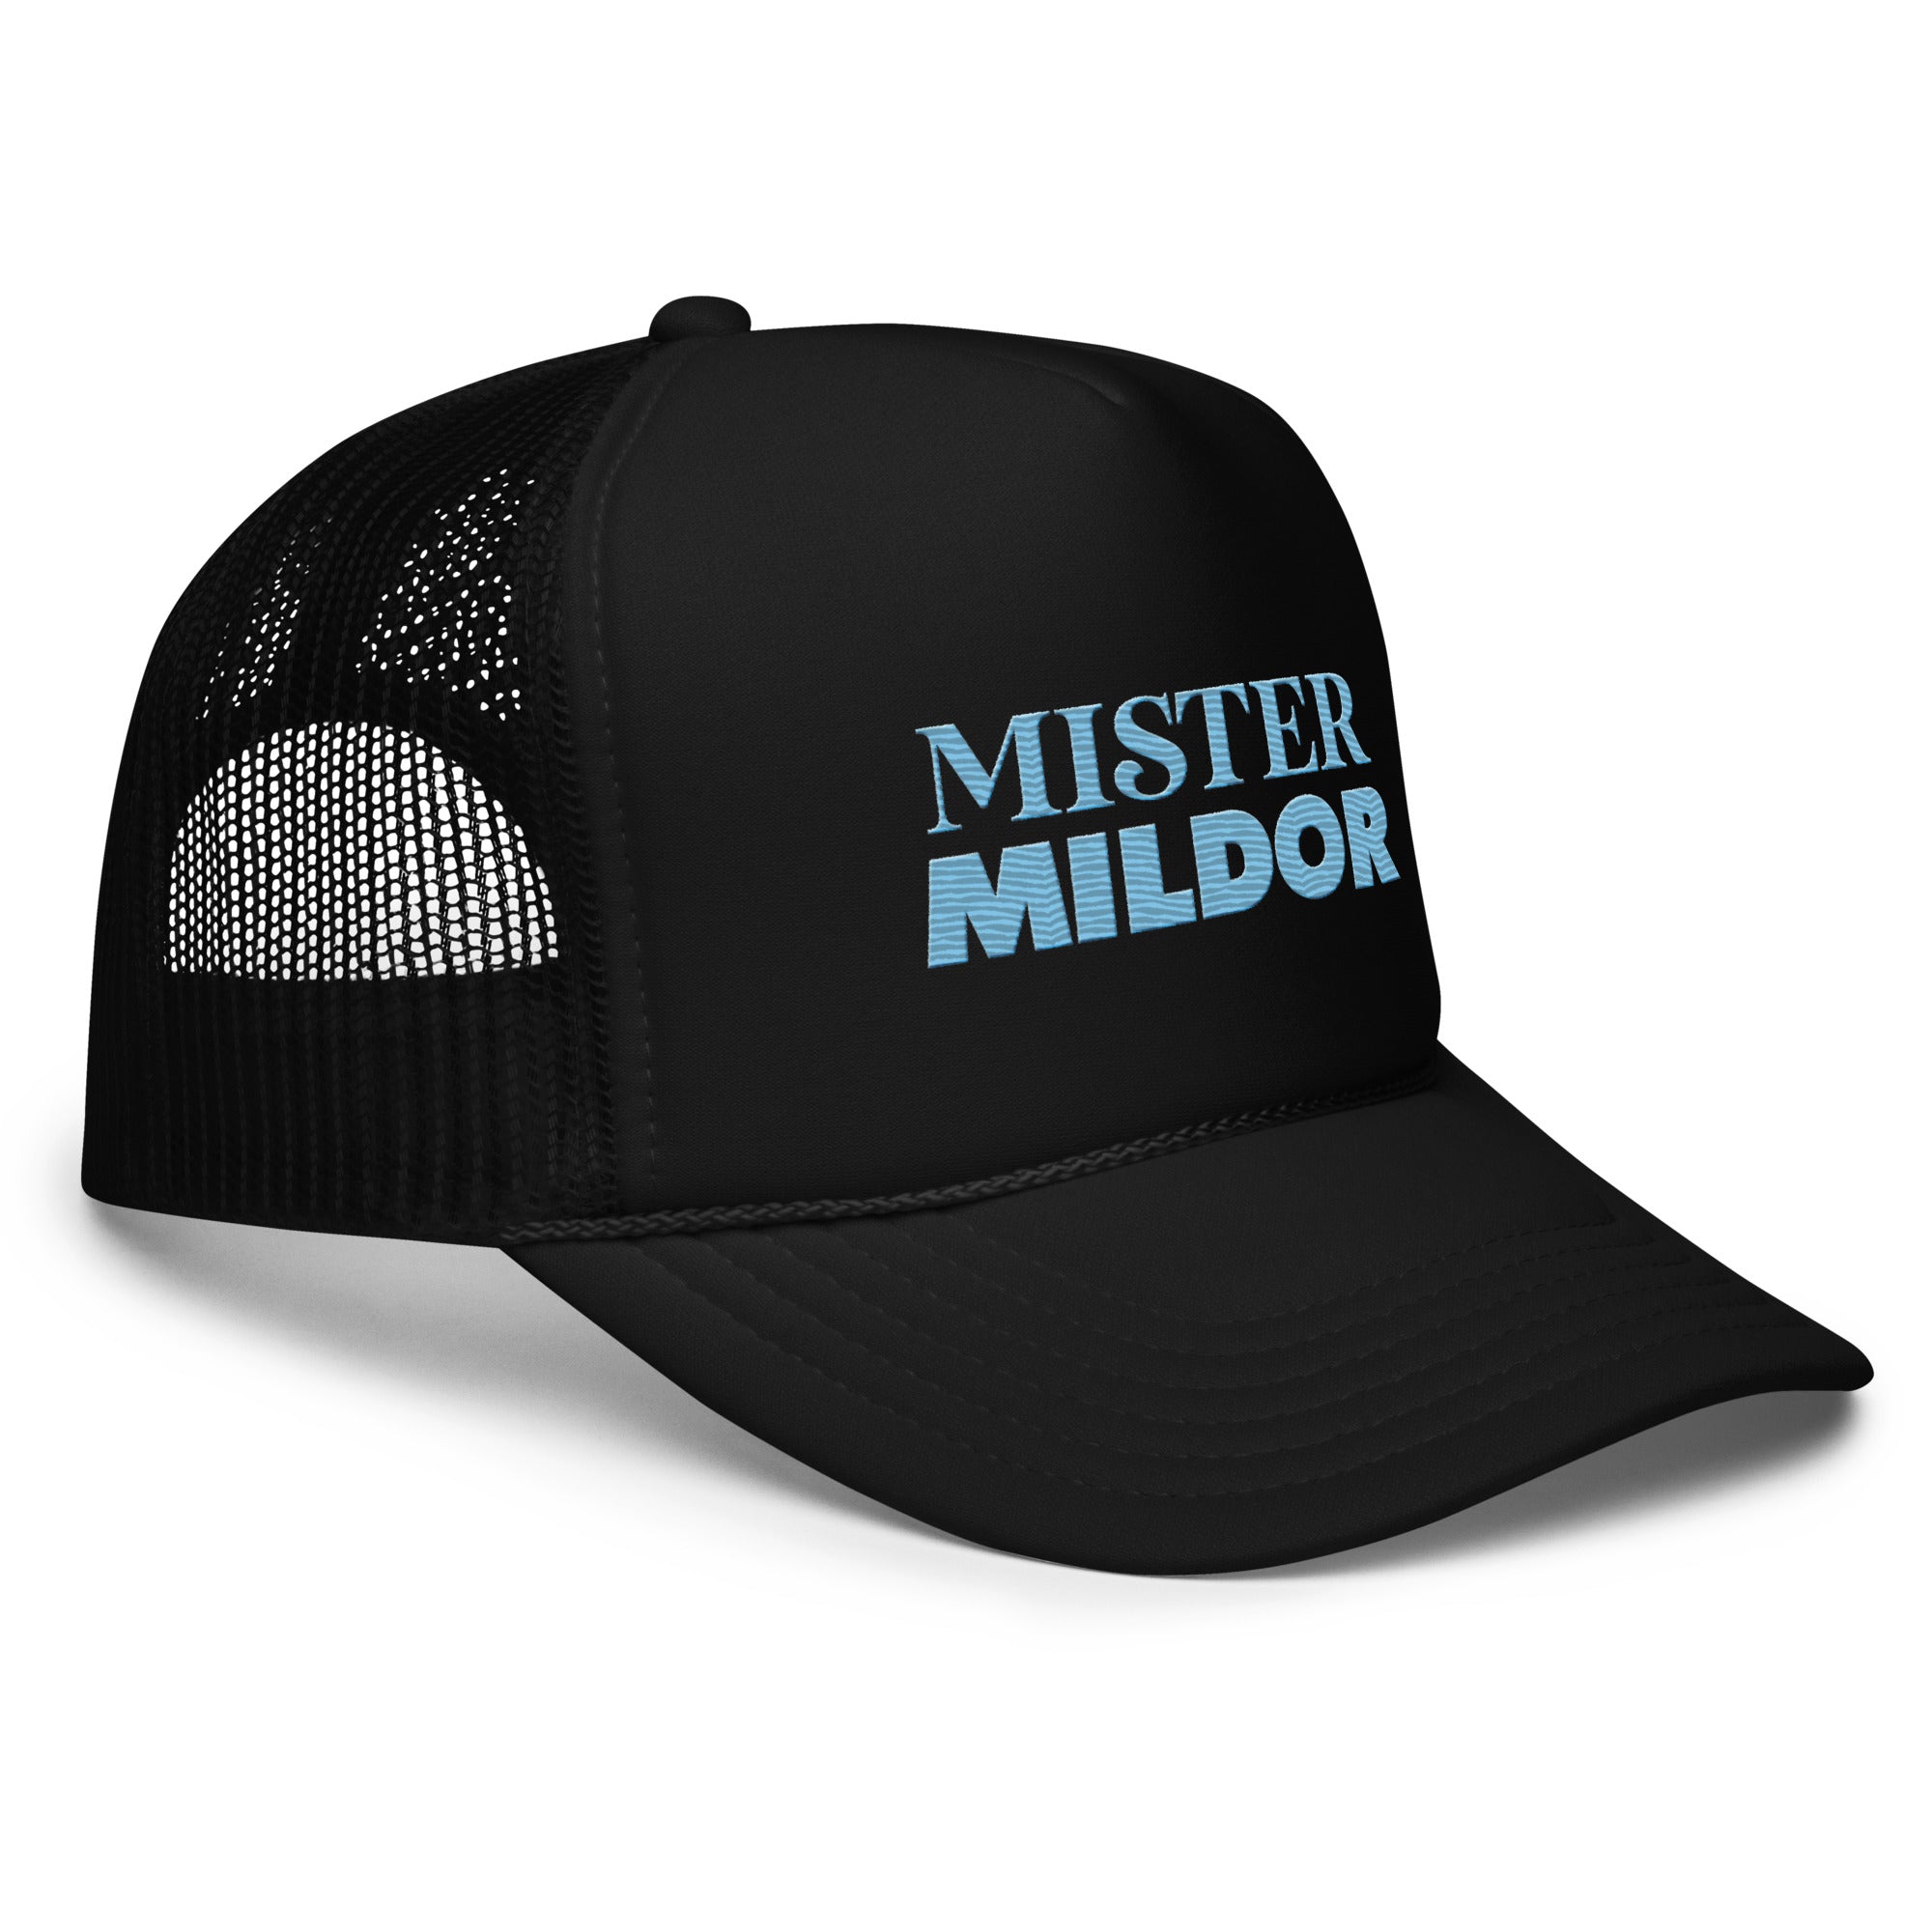 MISTER MILDOR  trucker hat